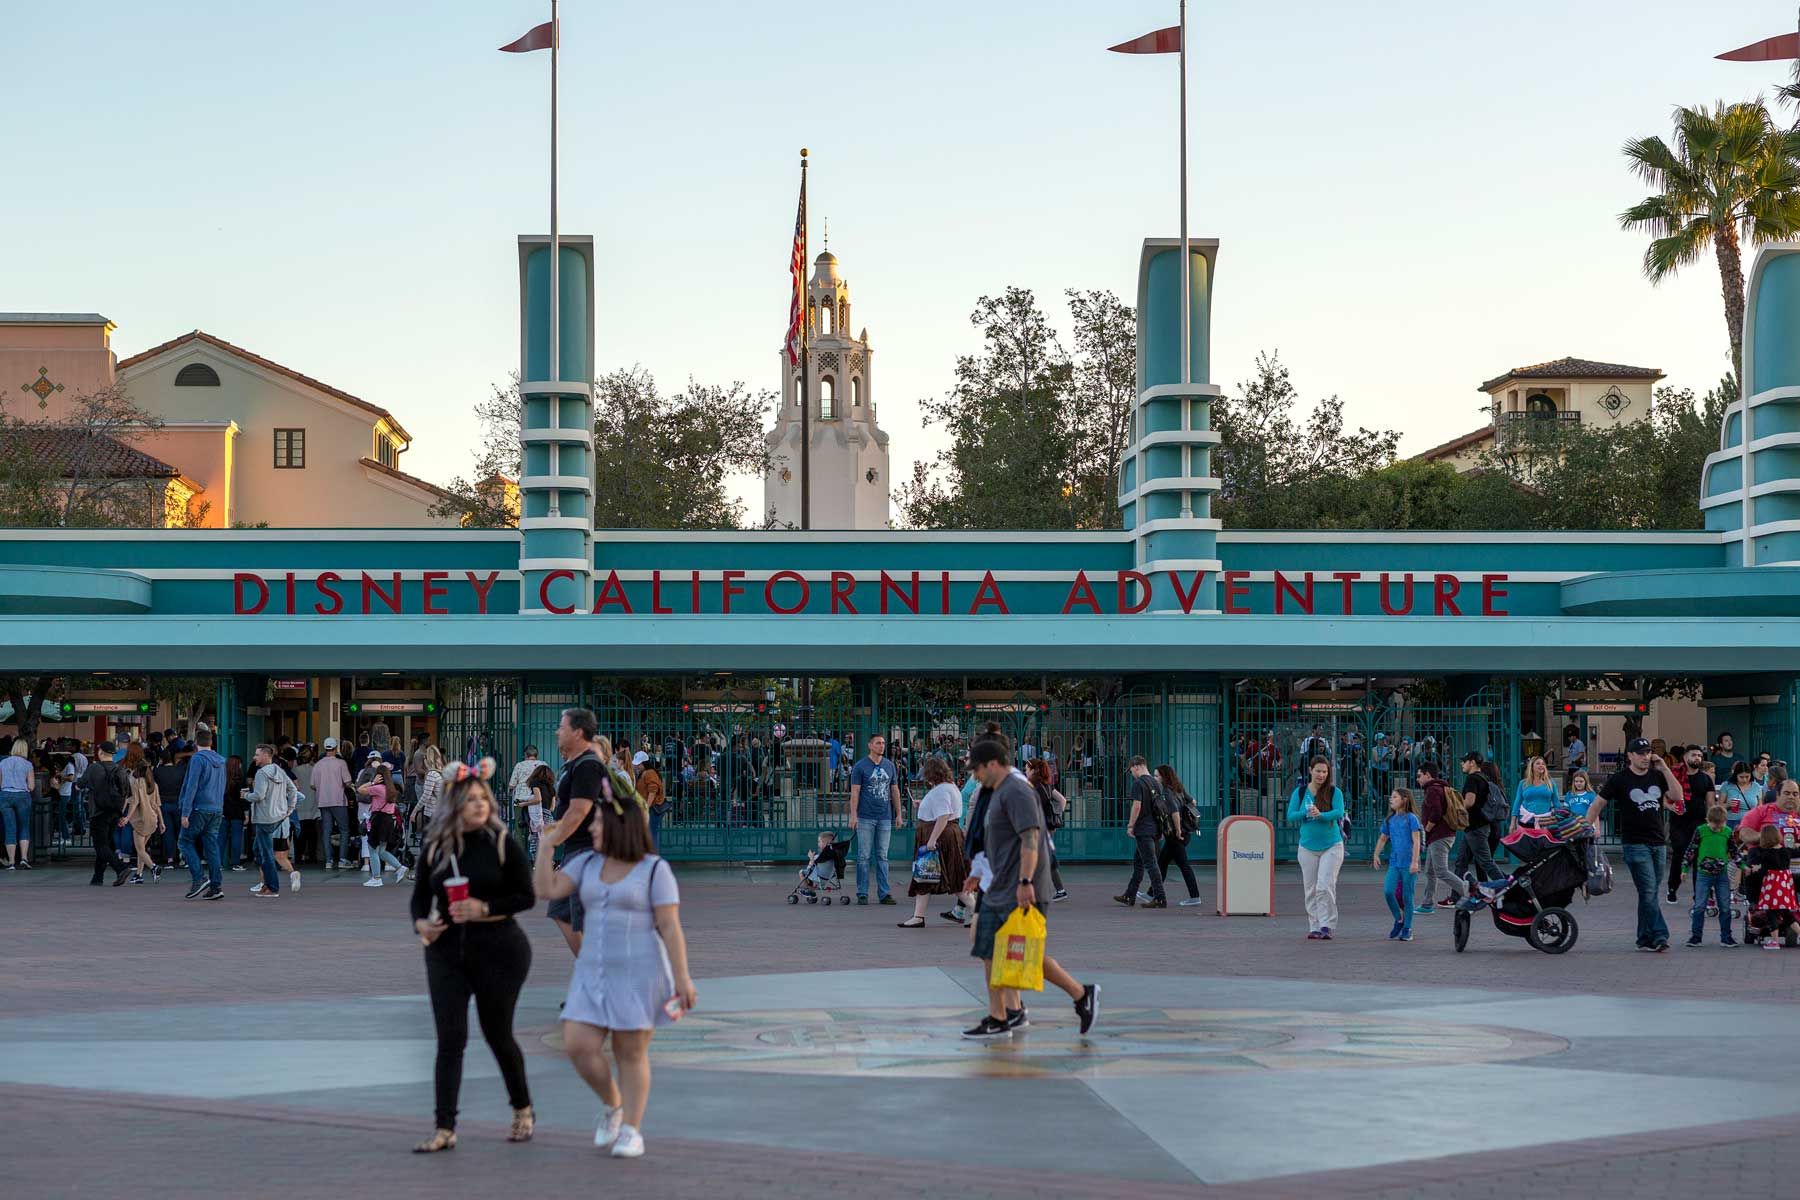 Besøgende deltager i Disney California Adventure temapark den 25. februar 2020 i Anaheim, Californien. Bob Iger, der var administrerende direktør for Disney siden 2005, erstattes af Bob Chapek, der tidligere ledede virksomheden